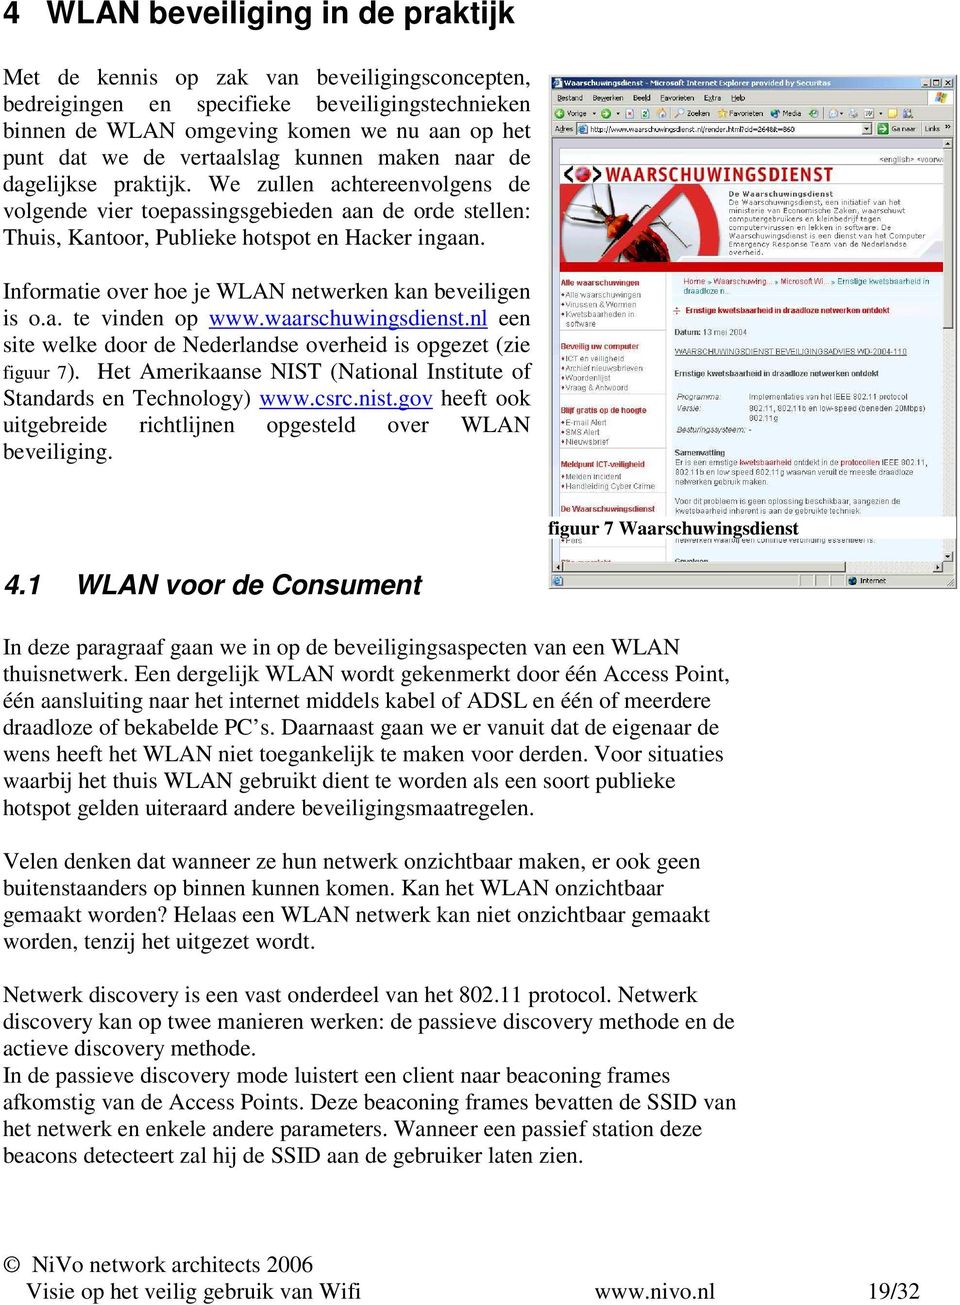 Informatie over hoe je WLAN netwerken kan beveiligen is o.a. te vinden op www.waarschuwingsdienst.nl een site welke door de Nederlandse overheid is opgezet (zie figuur 7).